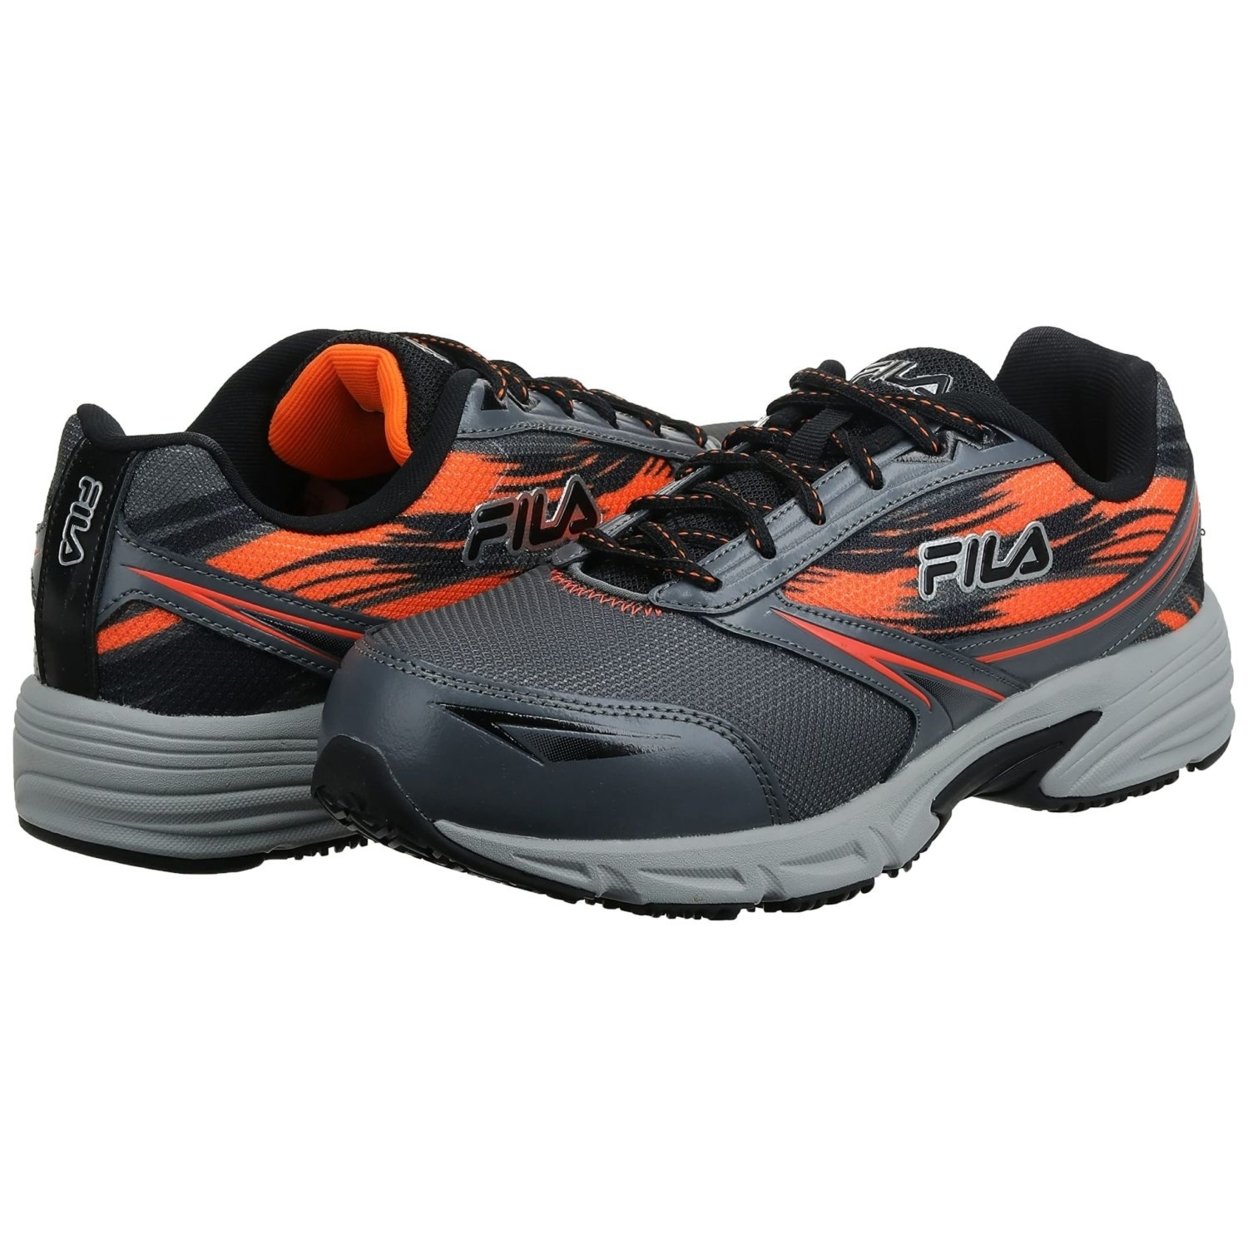 Fila Menâs Memory Meiera 2 Slip Resistant And Composite Toe Work Shoe CSRK/BLK/VORN - Castlerock/Black/Vibrant Orange, 7.5